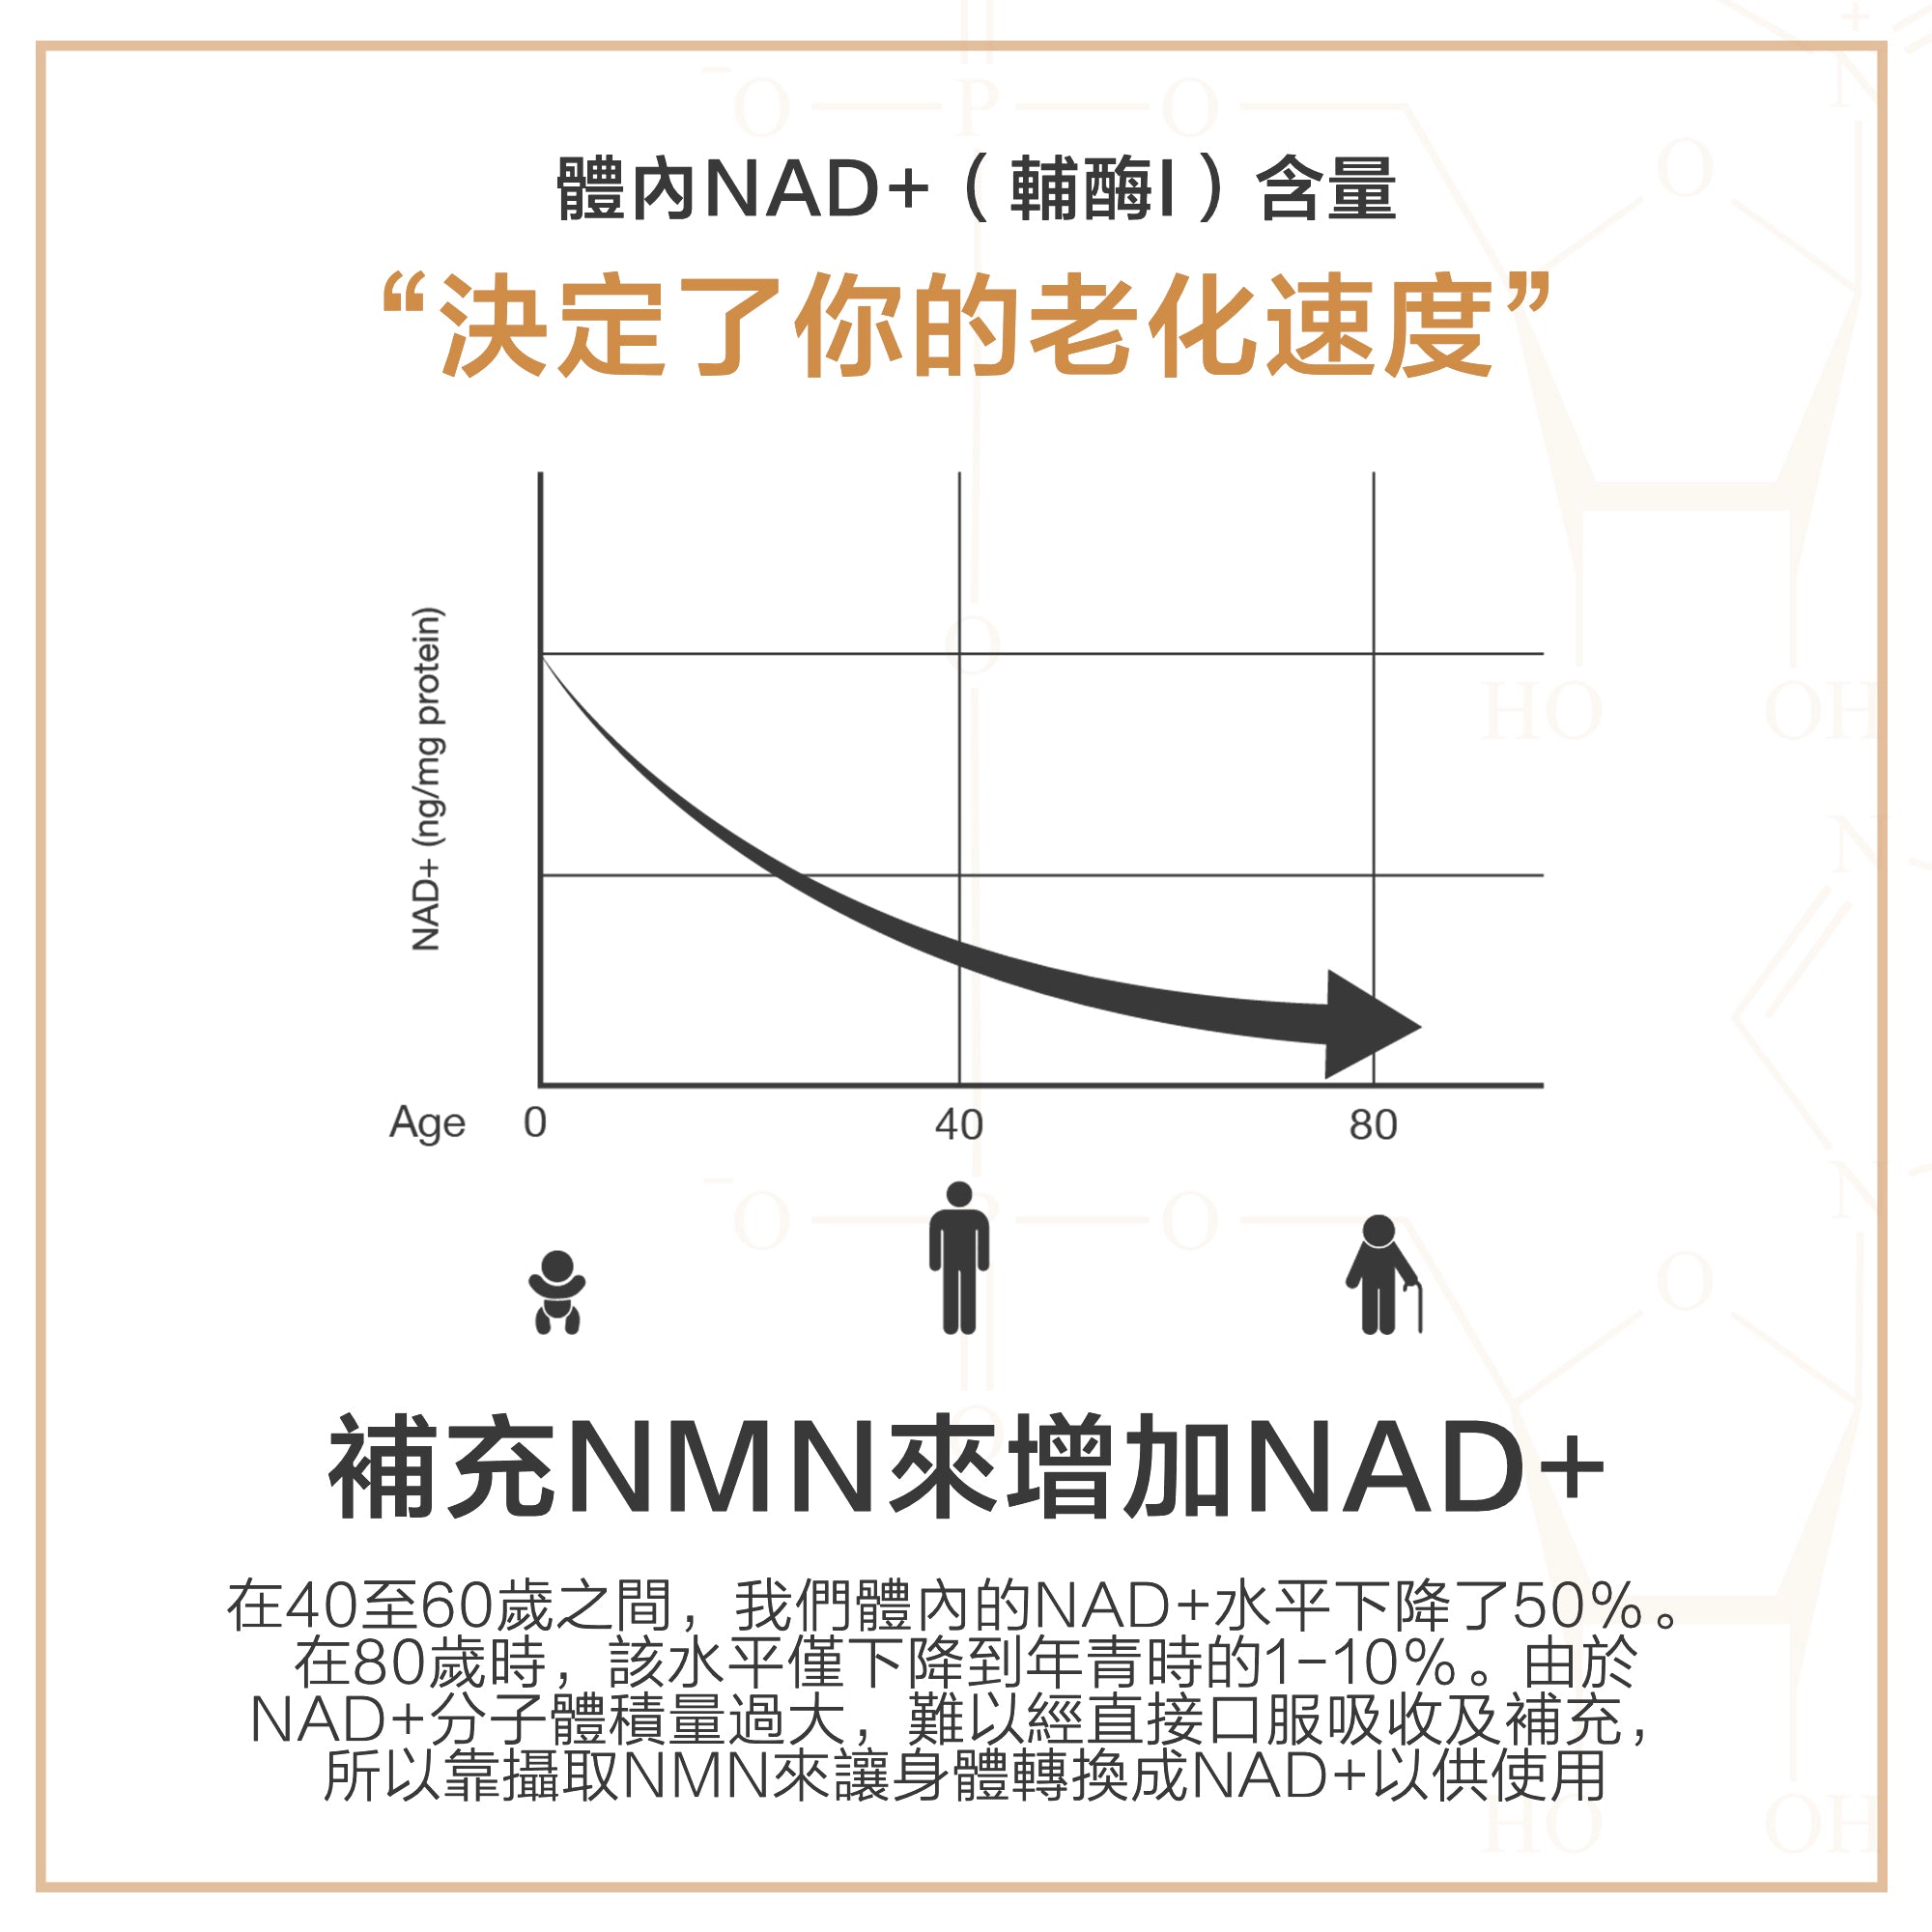 體內NAD+（輔酶I）含量決定了你的老化速度，補充NMN來增加NAD+，在40至60歲之間，我們體內的NAD+水平下降了50％。 在80歲時，該水平僅下降到年青時的1-10％。由於NAD+分子體積量過大，難以經直接口服吸收及補充，所以靠攝取NMN來讓身體轉換成NAD+以供使用